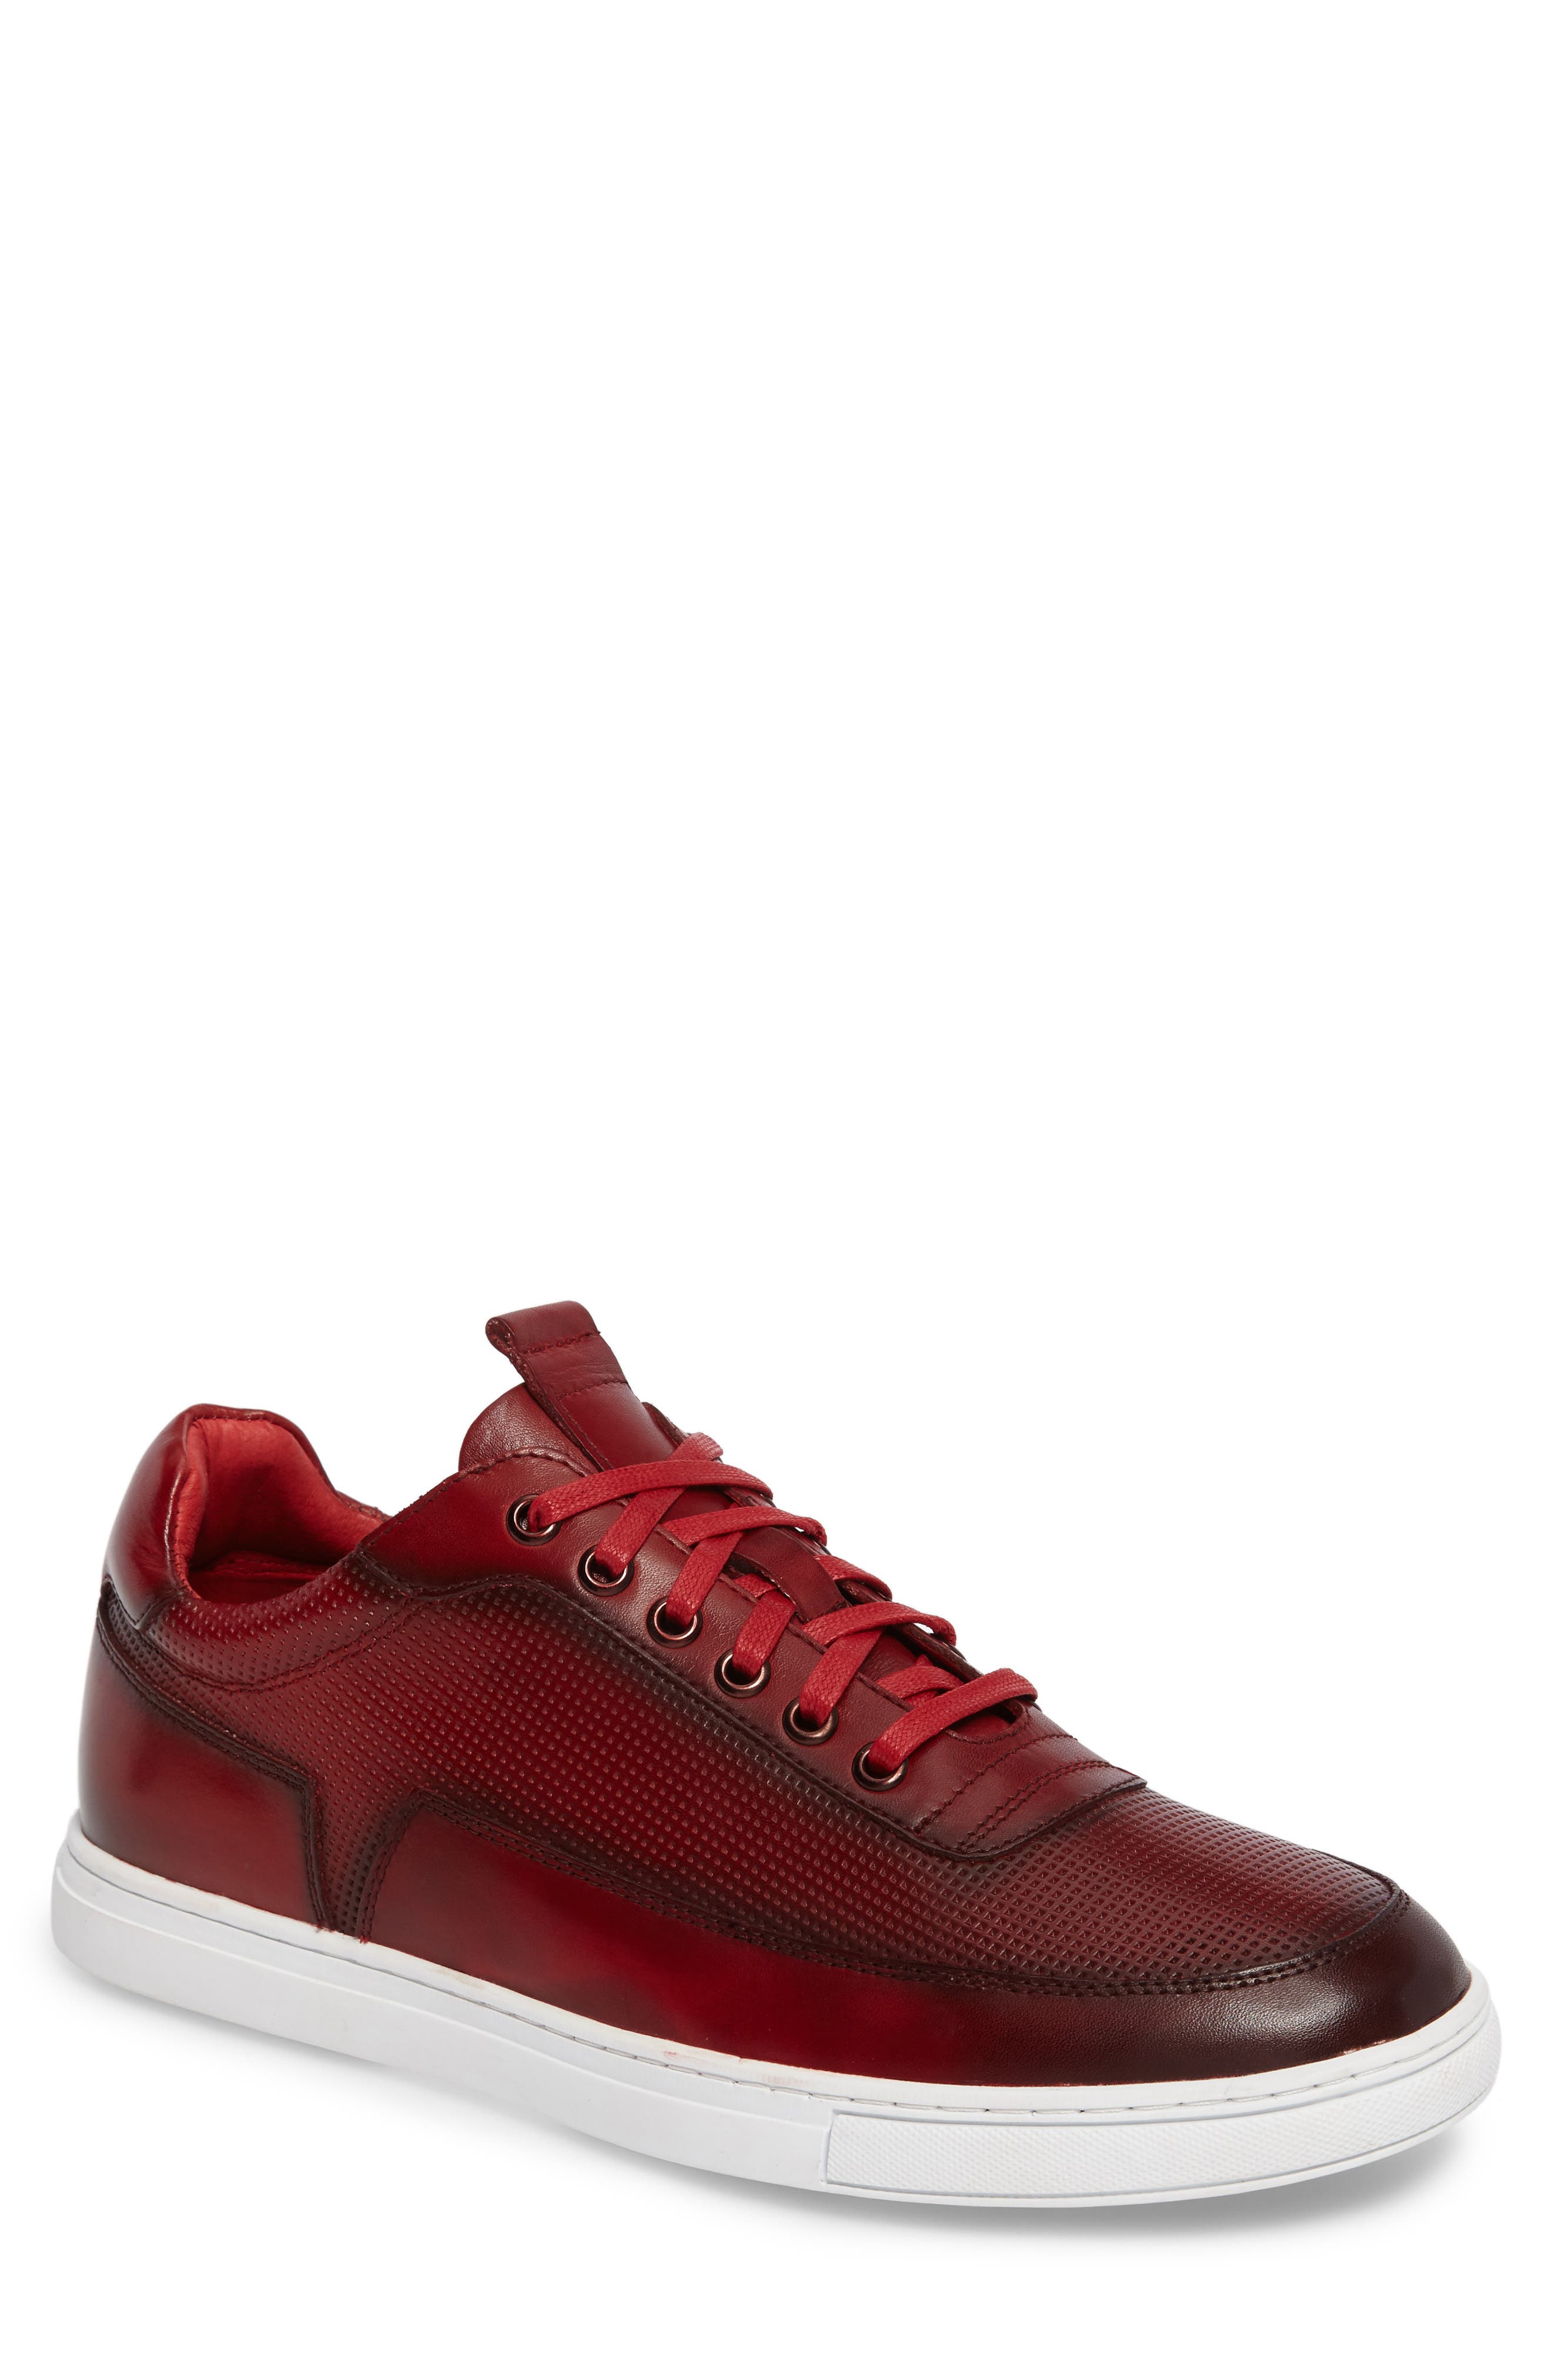 Zanzara Harmony Sneaker In Bright Red